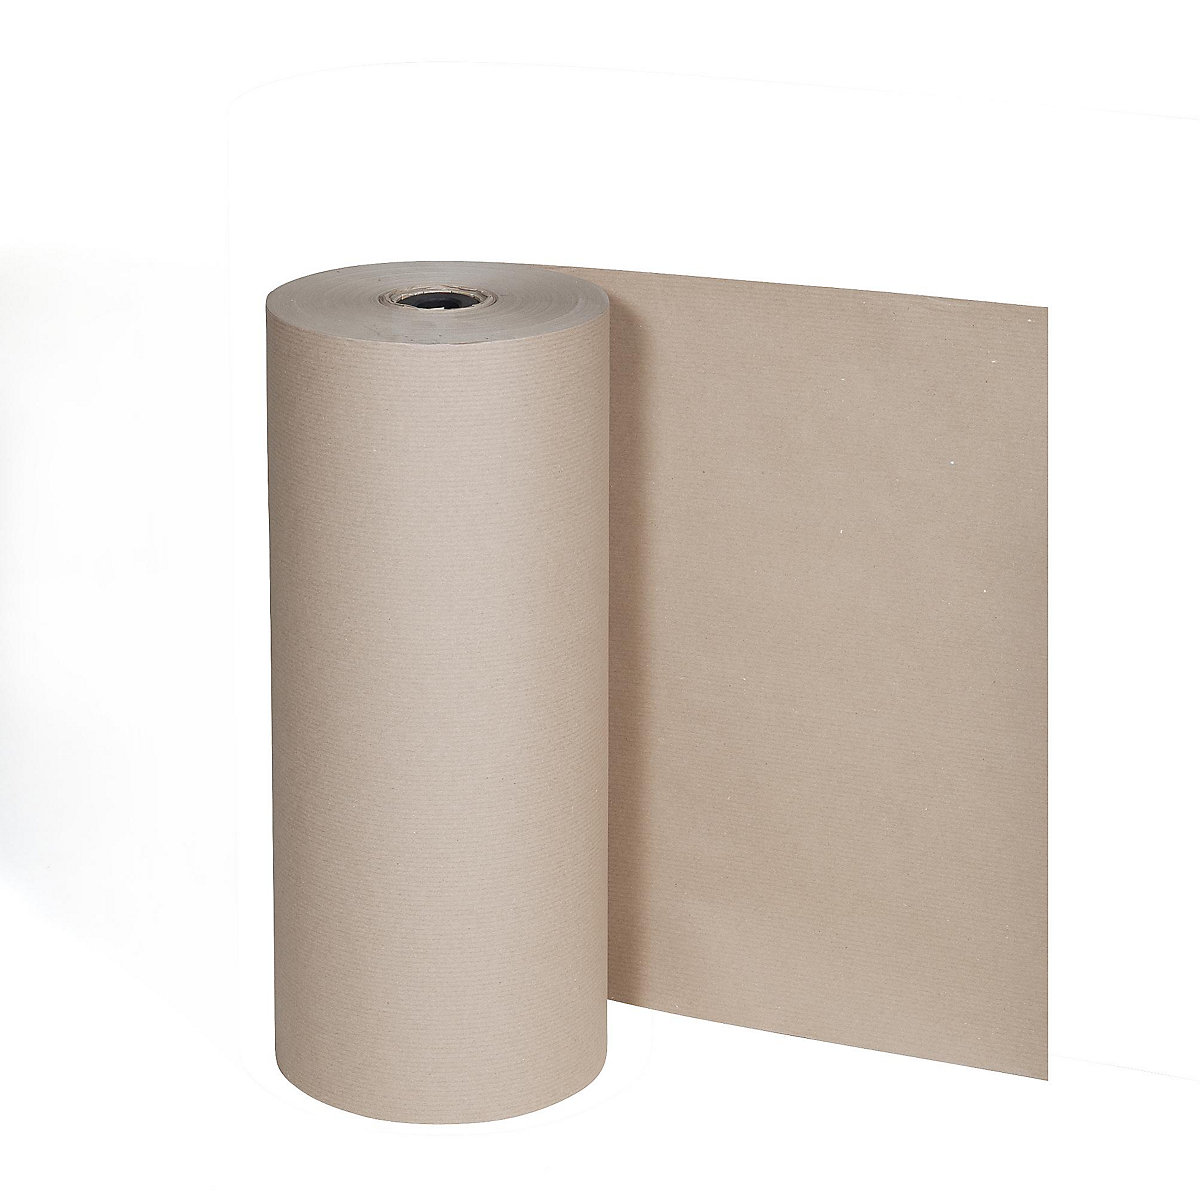 Csomagolópapír, 80 g/m², állvány nagyméretű tekercsek függőleges tárolásához, szélesség 1250 mm-1